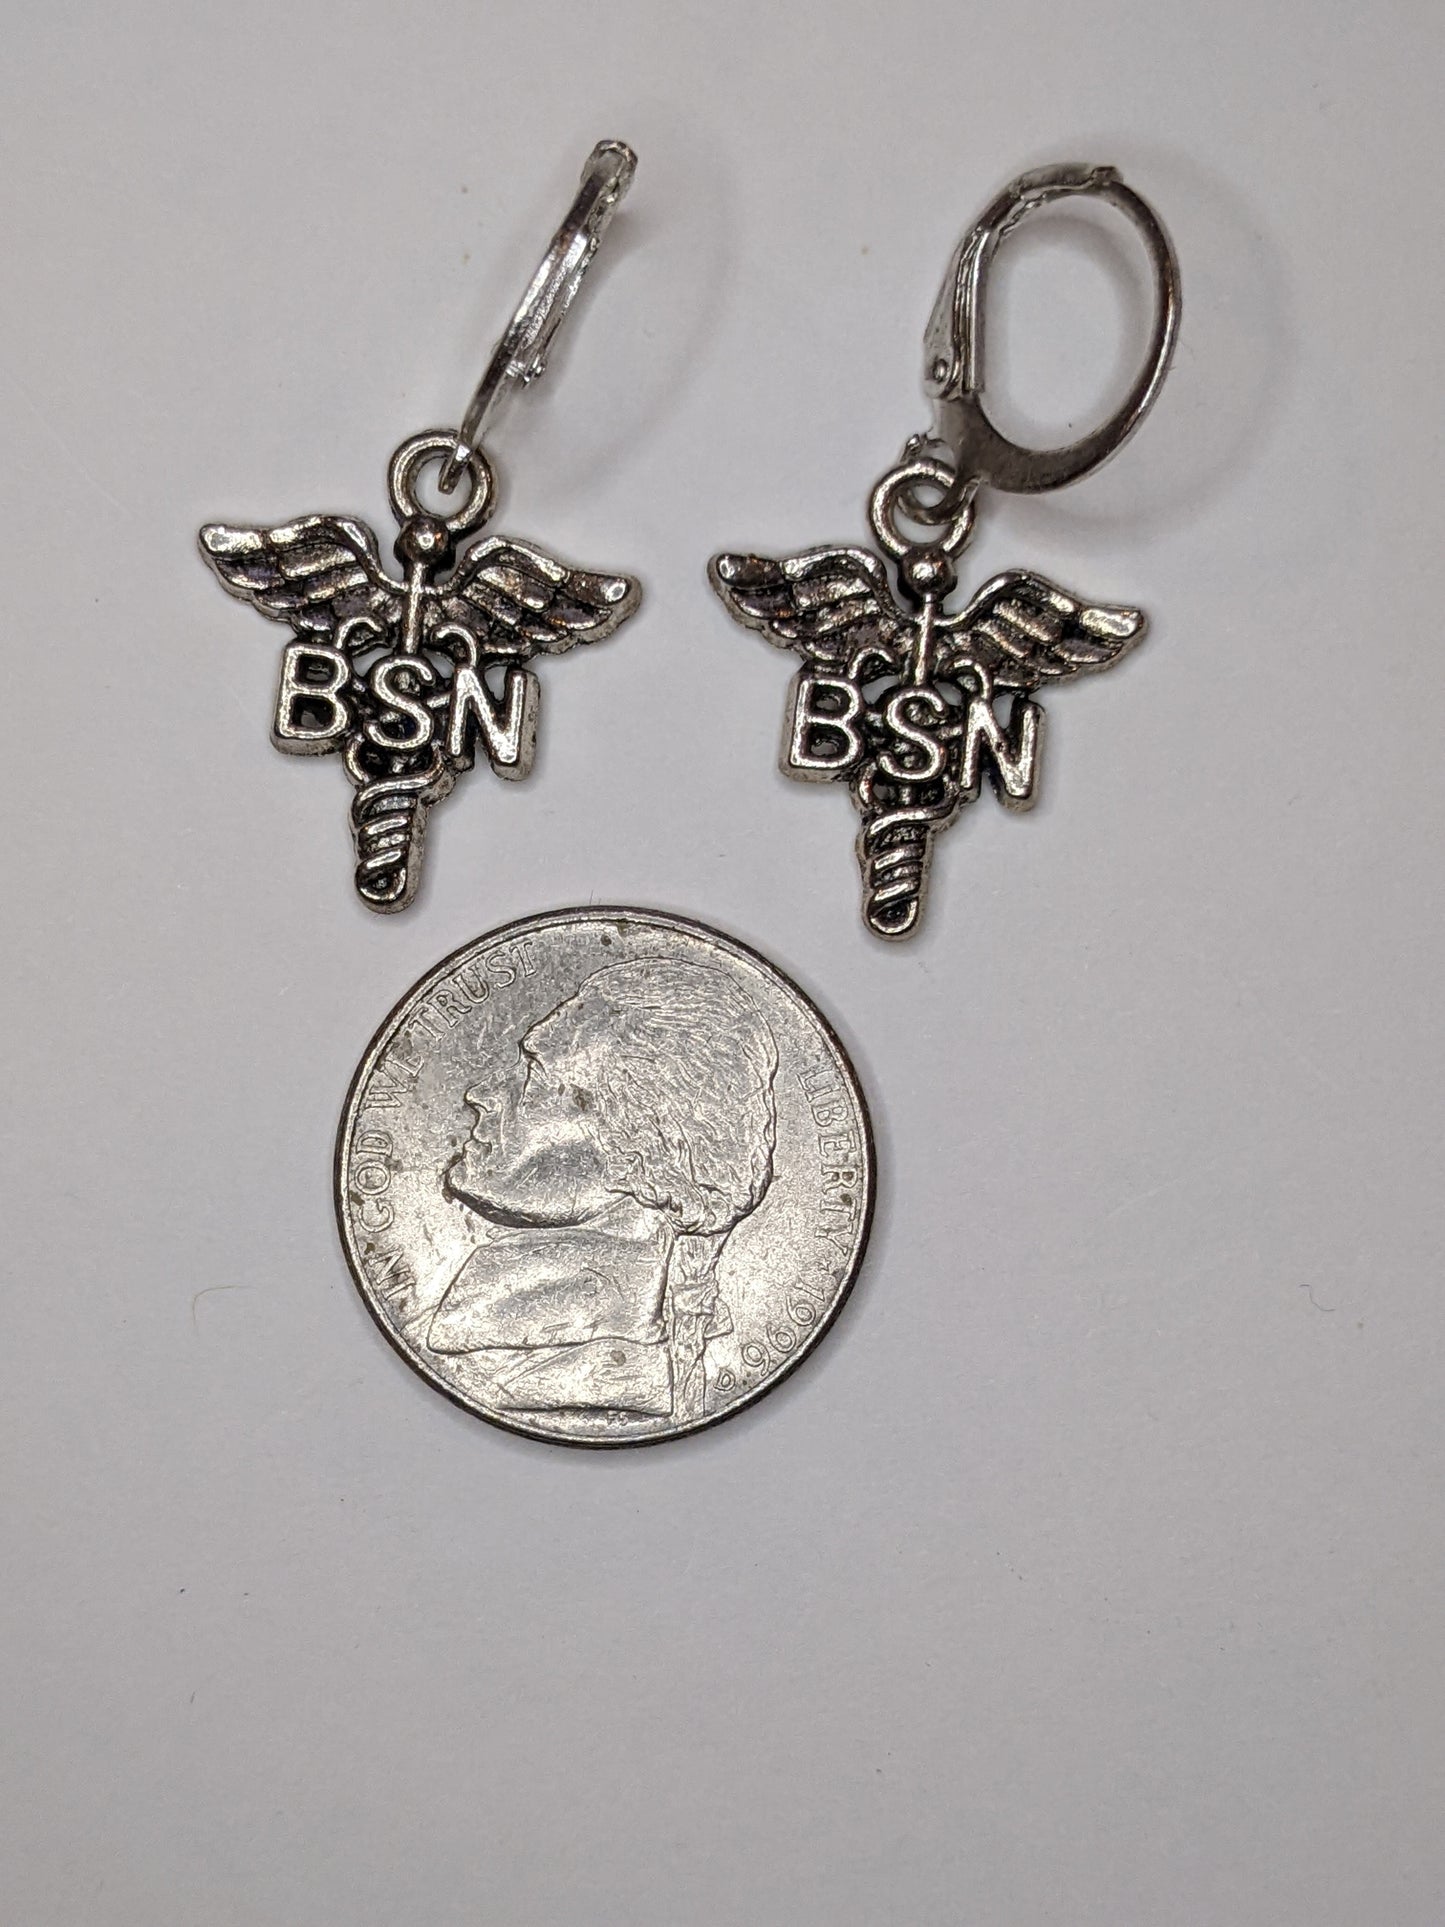 BSN Earrings Dangle Earrings Dragon & Wolf Designs   